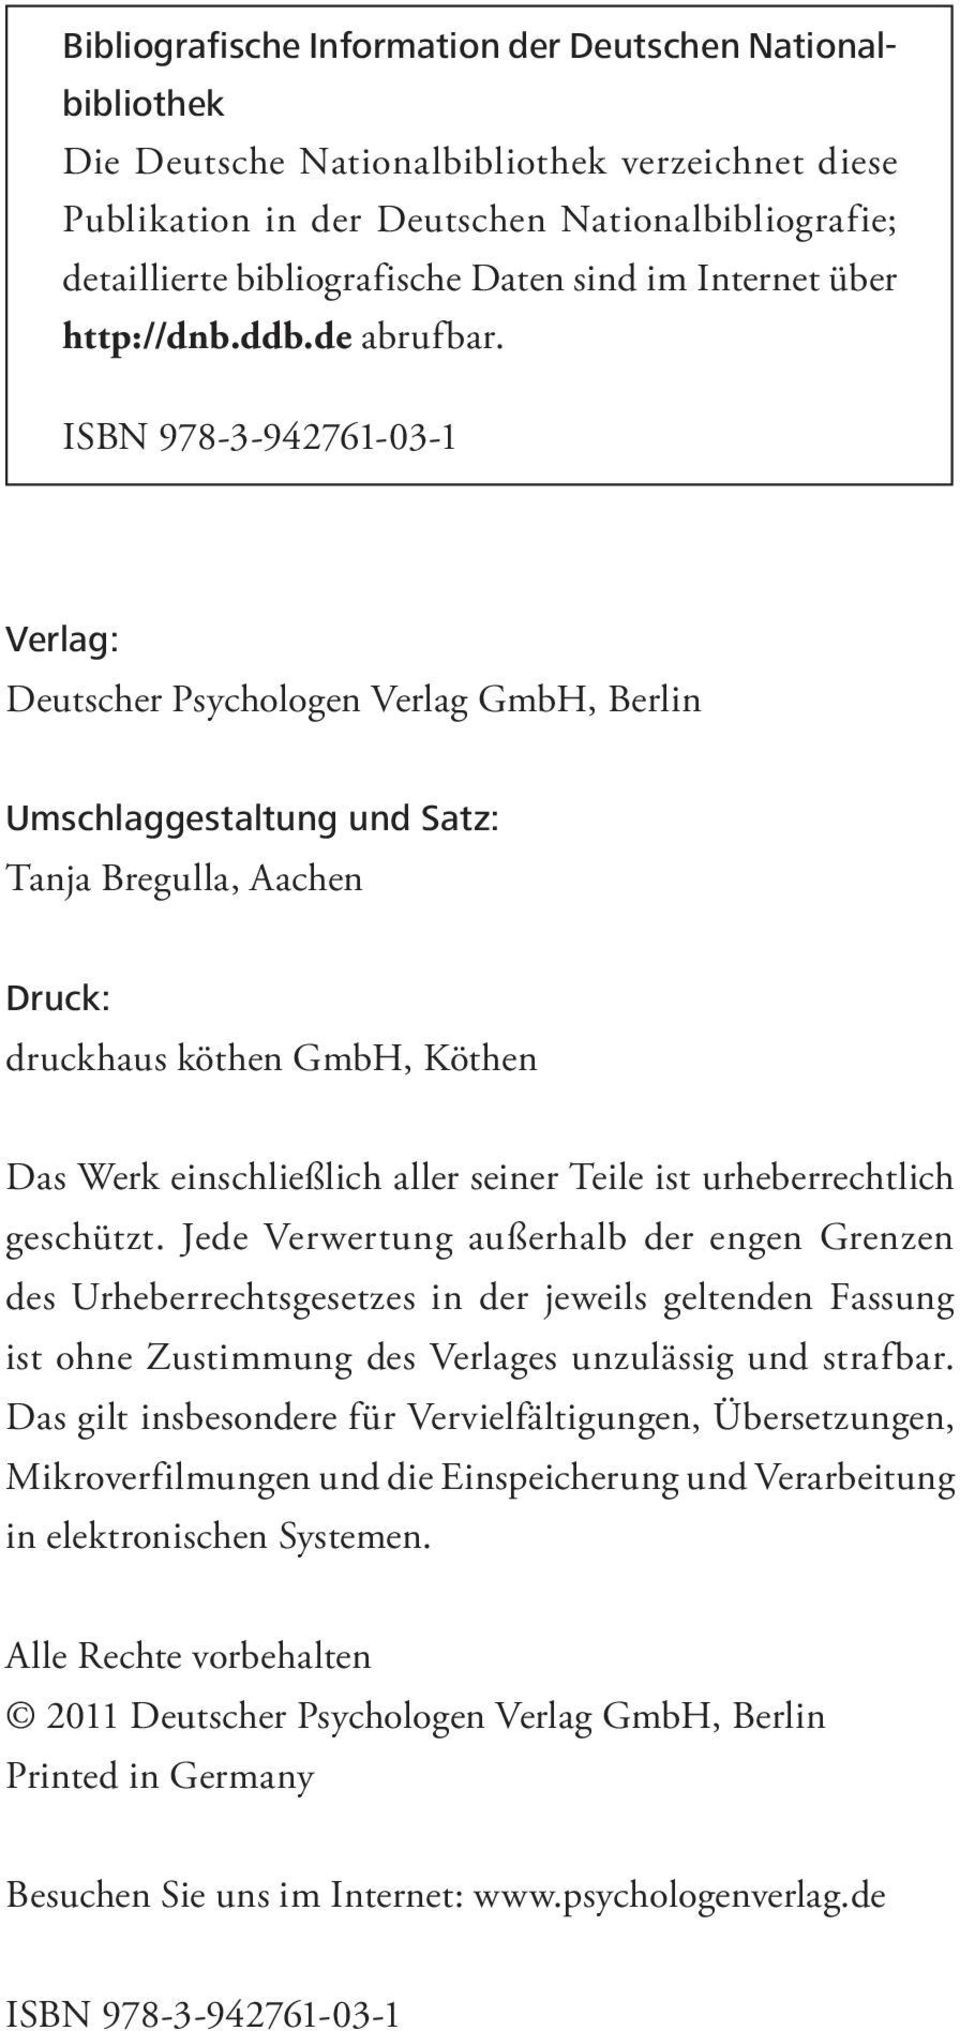 ISBN 978-3-942761-03-1 Verlag: Deutscher Psychologen Verlag GmbH, Berlin Umschlaggestaltung und Satz: Tanja Bregulla, Aachen Druck: druckhaus köthen GmbH, Köthen Das Werk einschließlich aller seiner